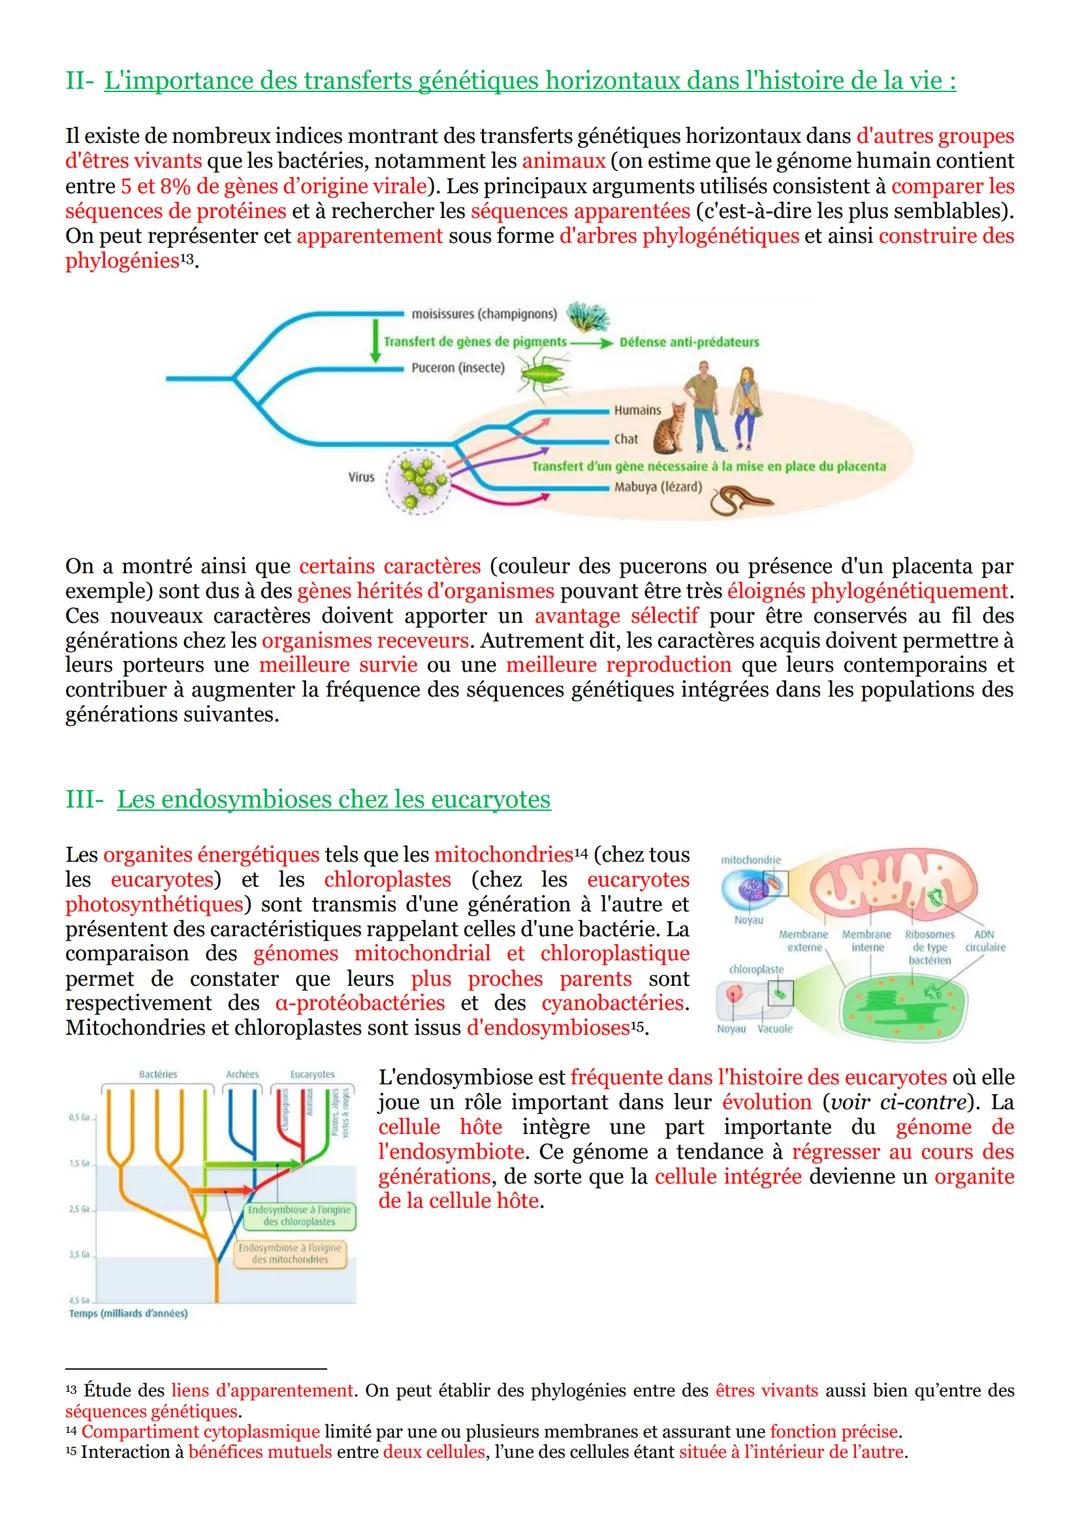 PARTIE 1 : Génétique et évolution :
Chapitre n°1: L'origine du génotype des individus :
I- La conservation des génomes : stabilité génétique